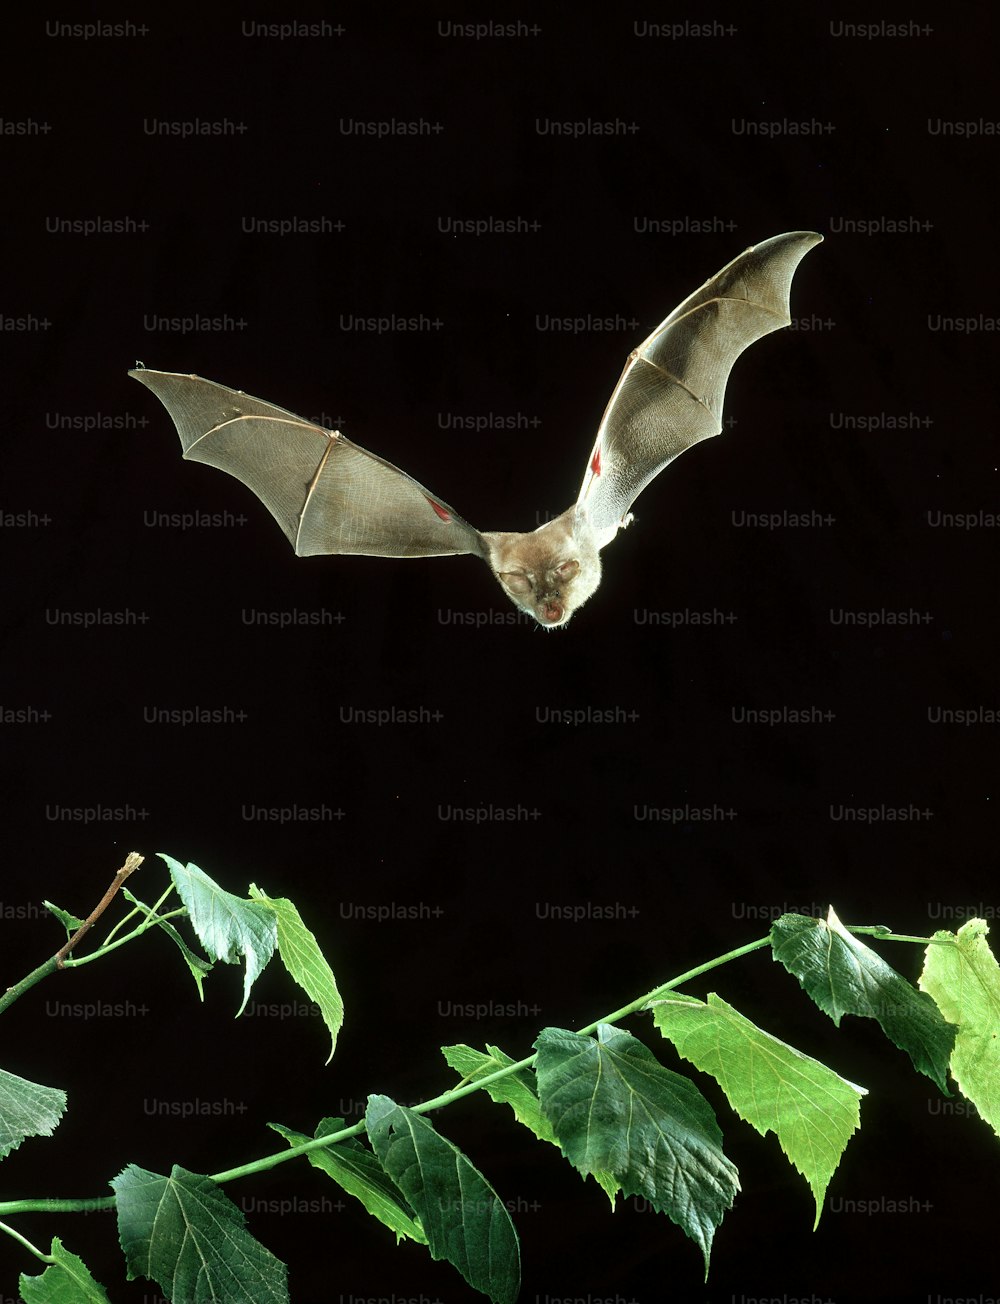 Un murciélago vuela sobre una planta frondosa